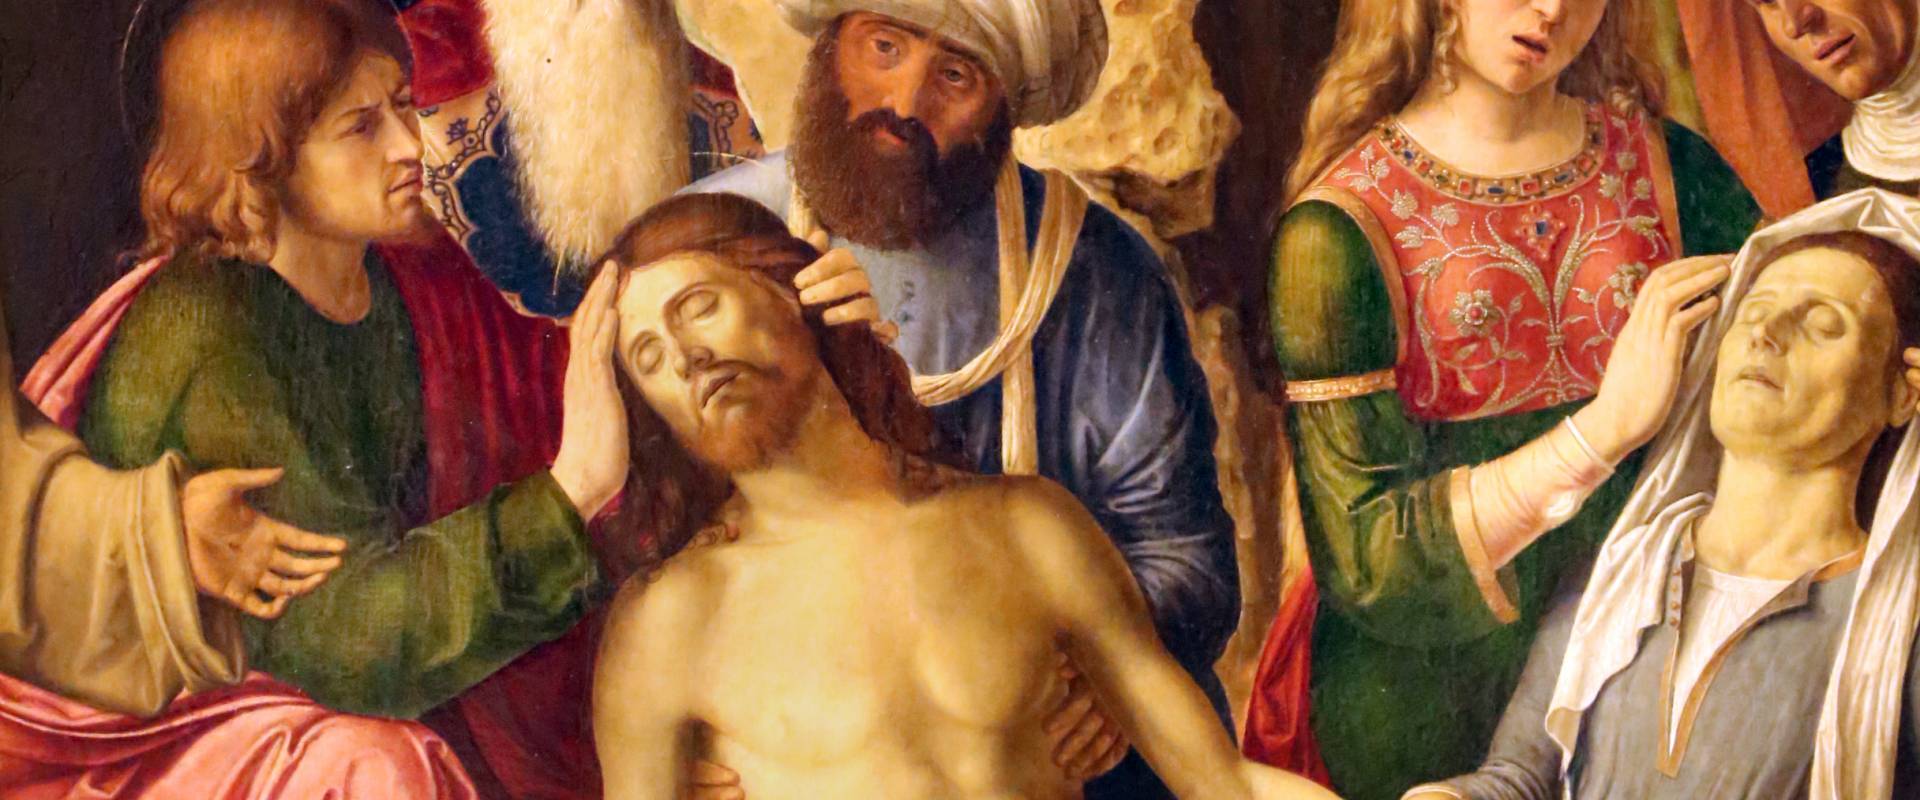 Cima da conegliano, compianto sul cristo morto coi ss. francesco e bernardino, 1502-1505 ca. 02 foto di Sailko